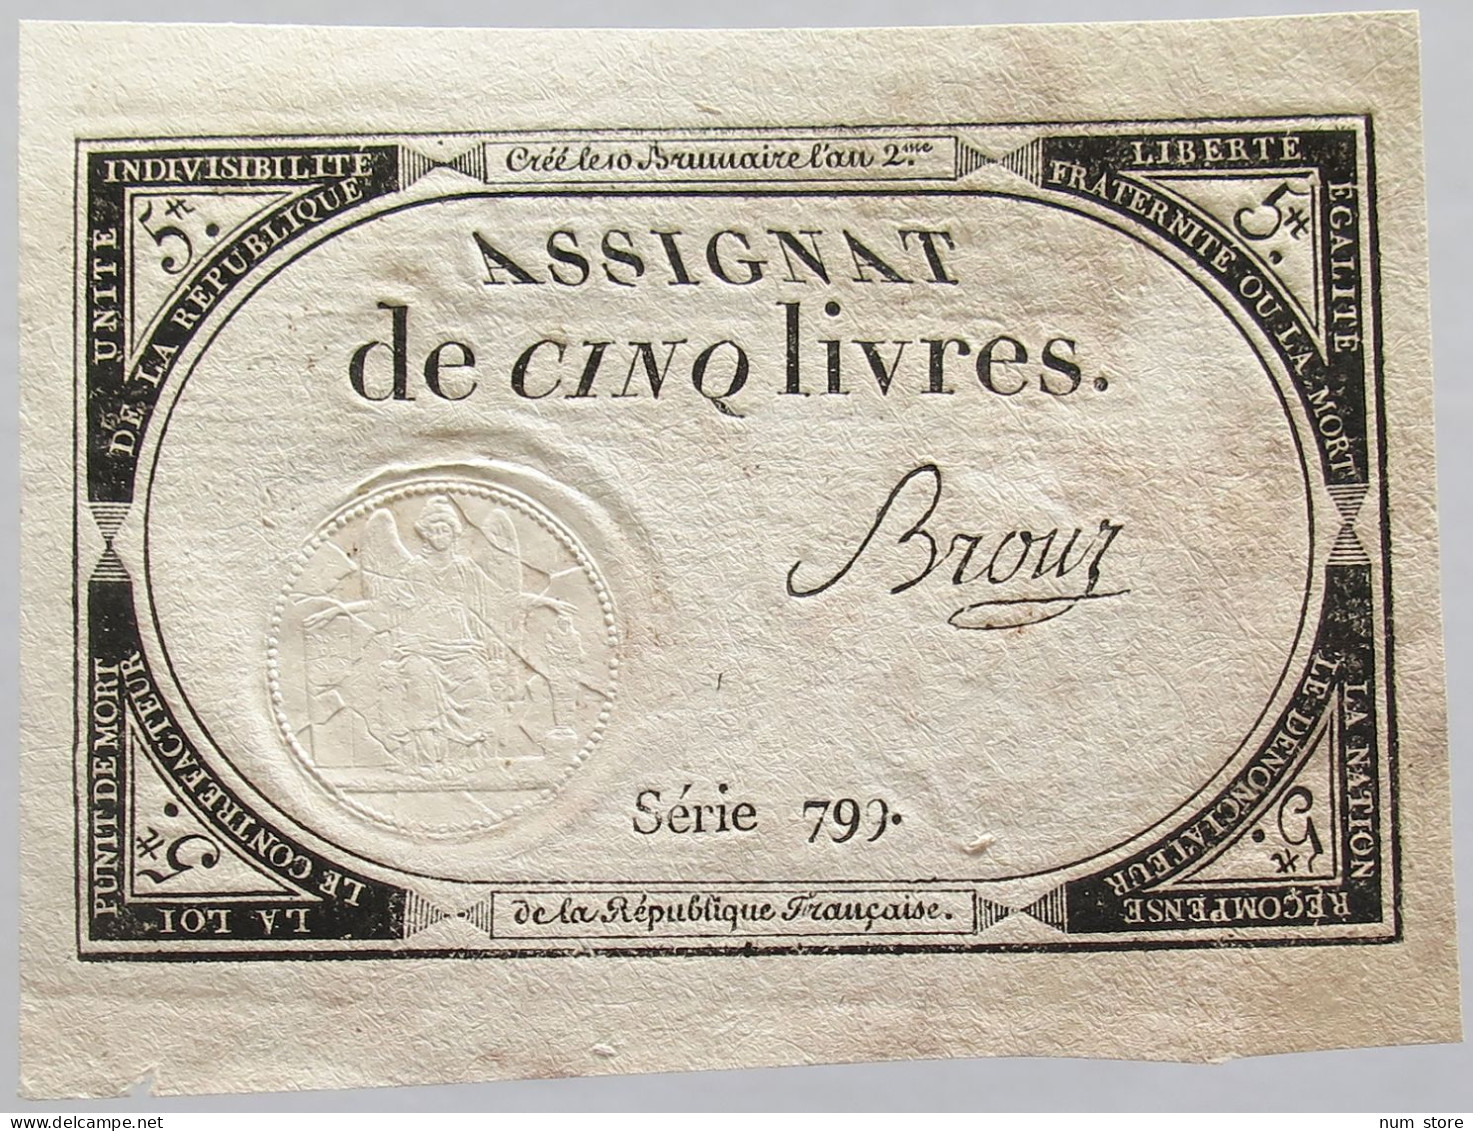 FRANCE ASSIGNAT 5 LIVRES #alb010 0247 - Assignats